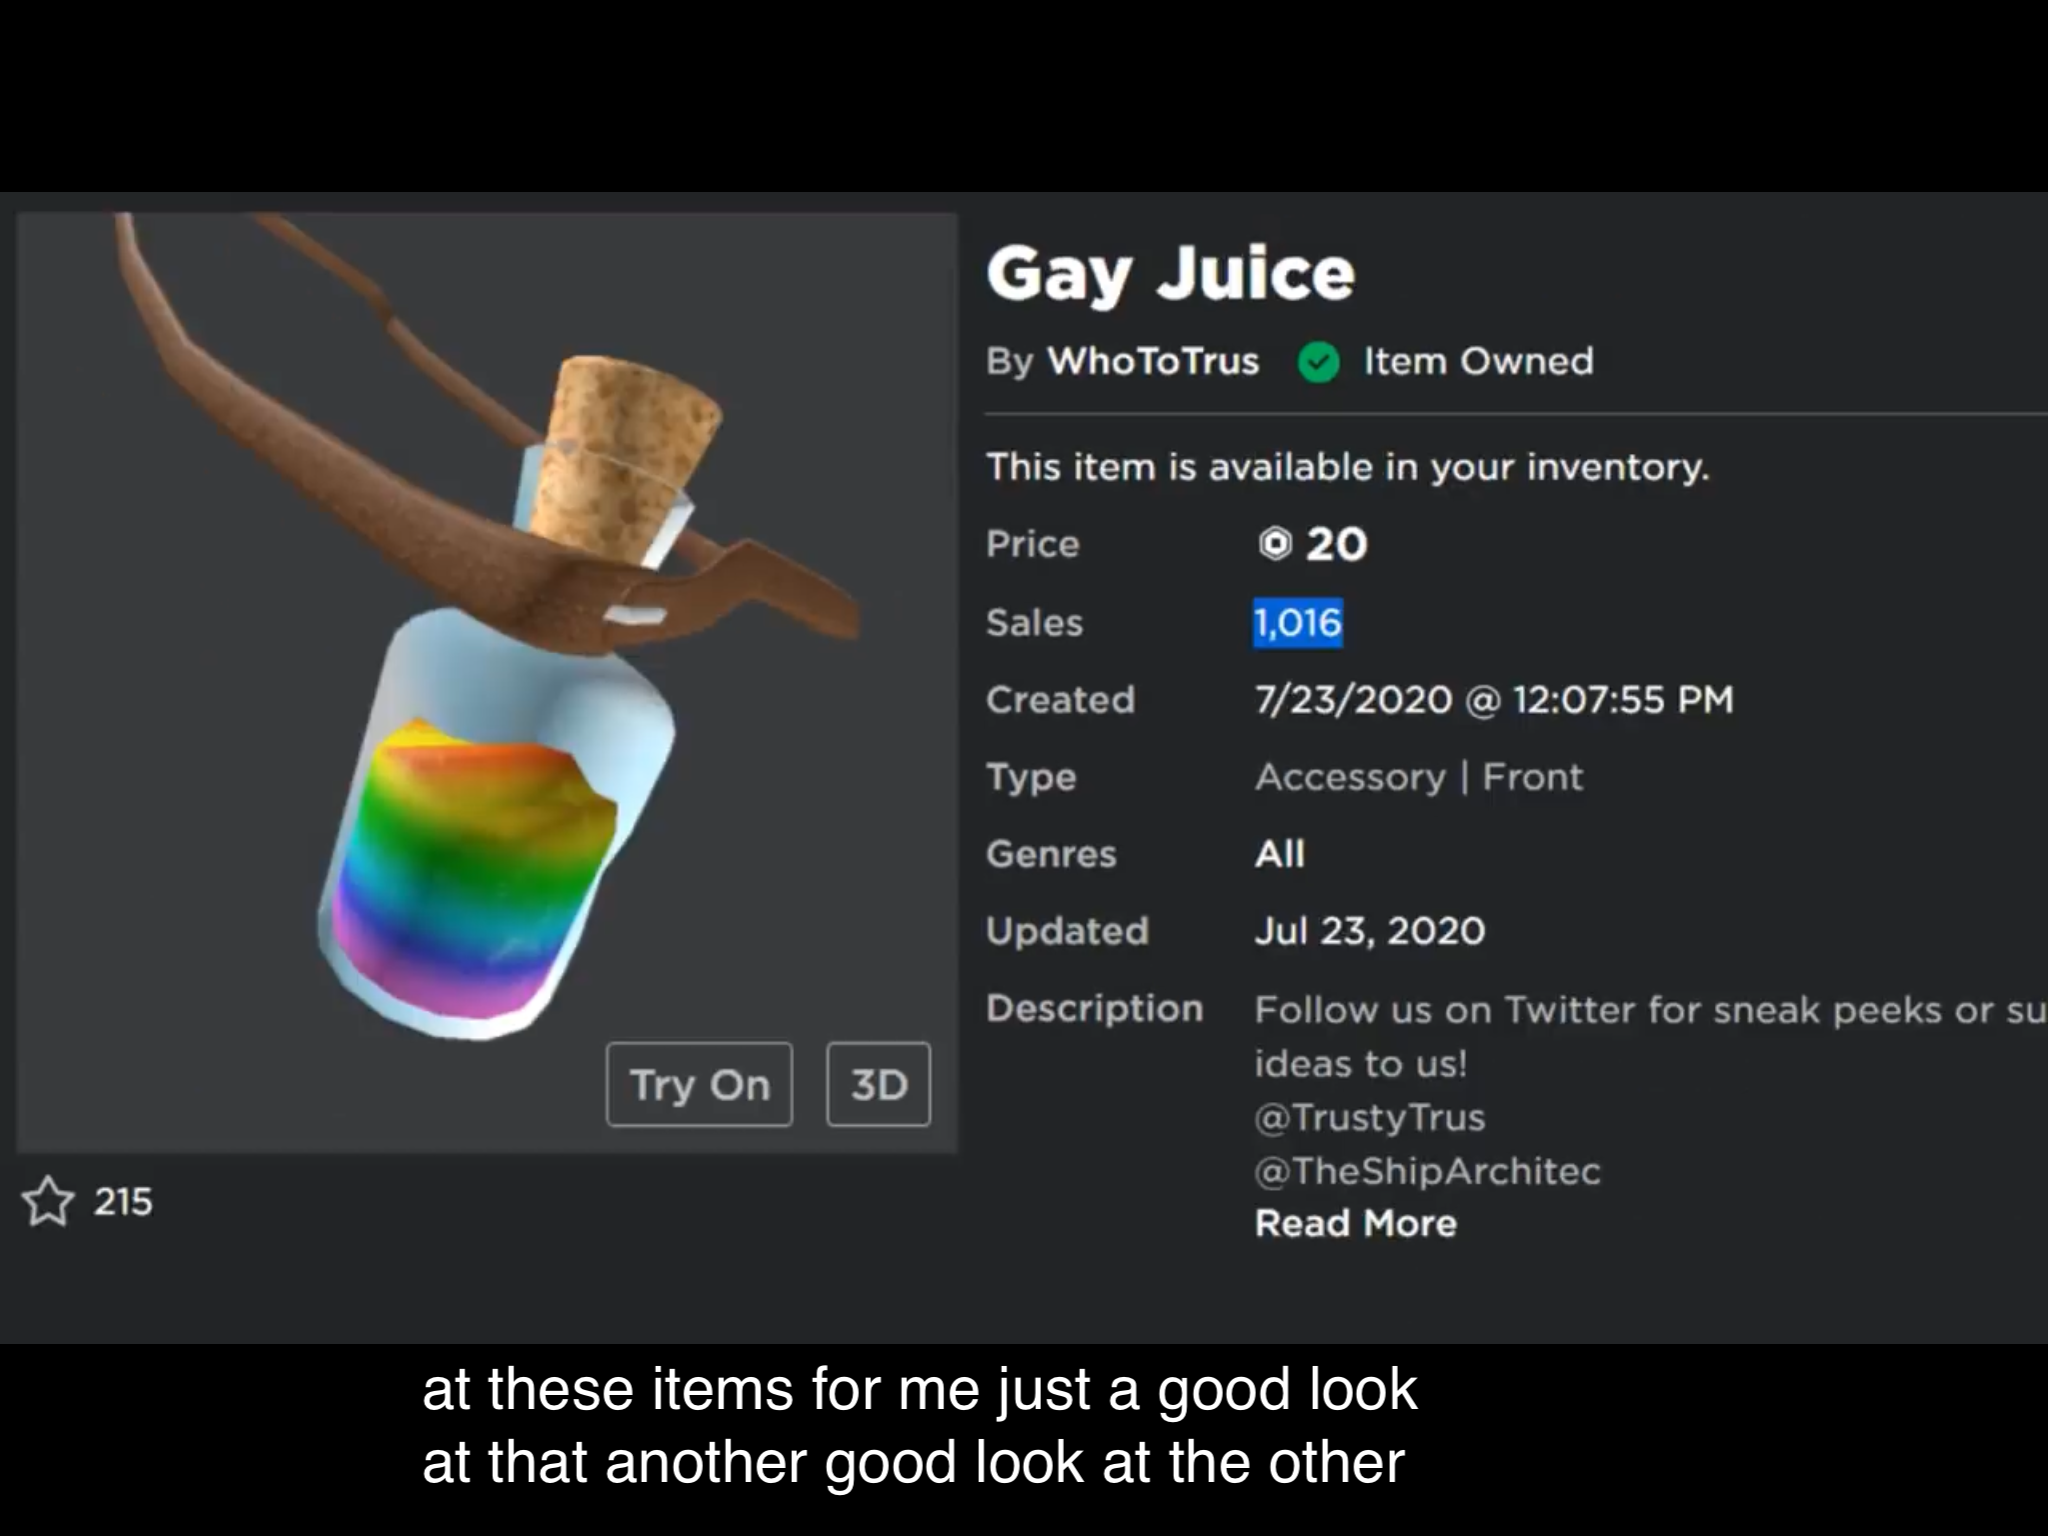 Rhdnhrndujdudundu Gay Juice Fandom - roblox is gay